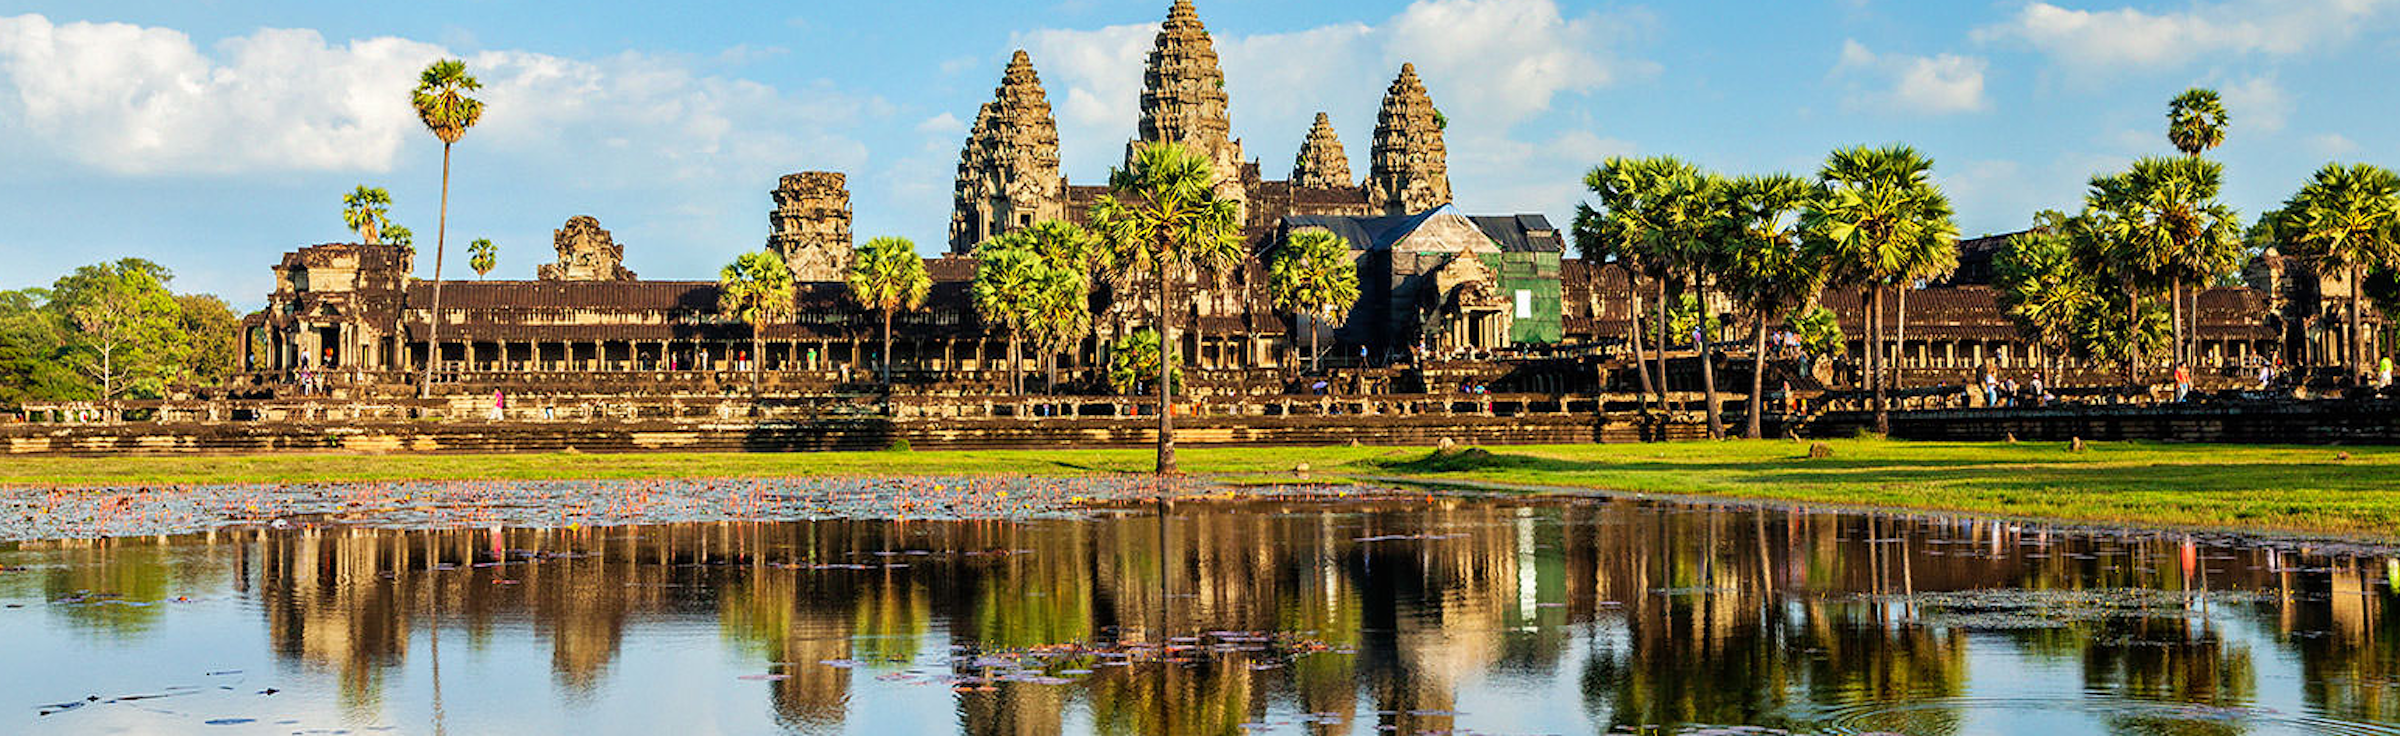 Cambodia vacations